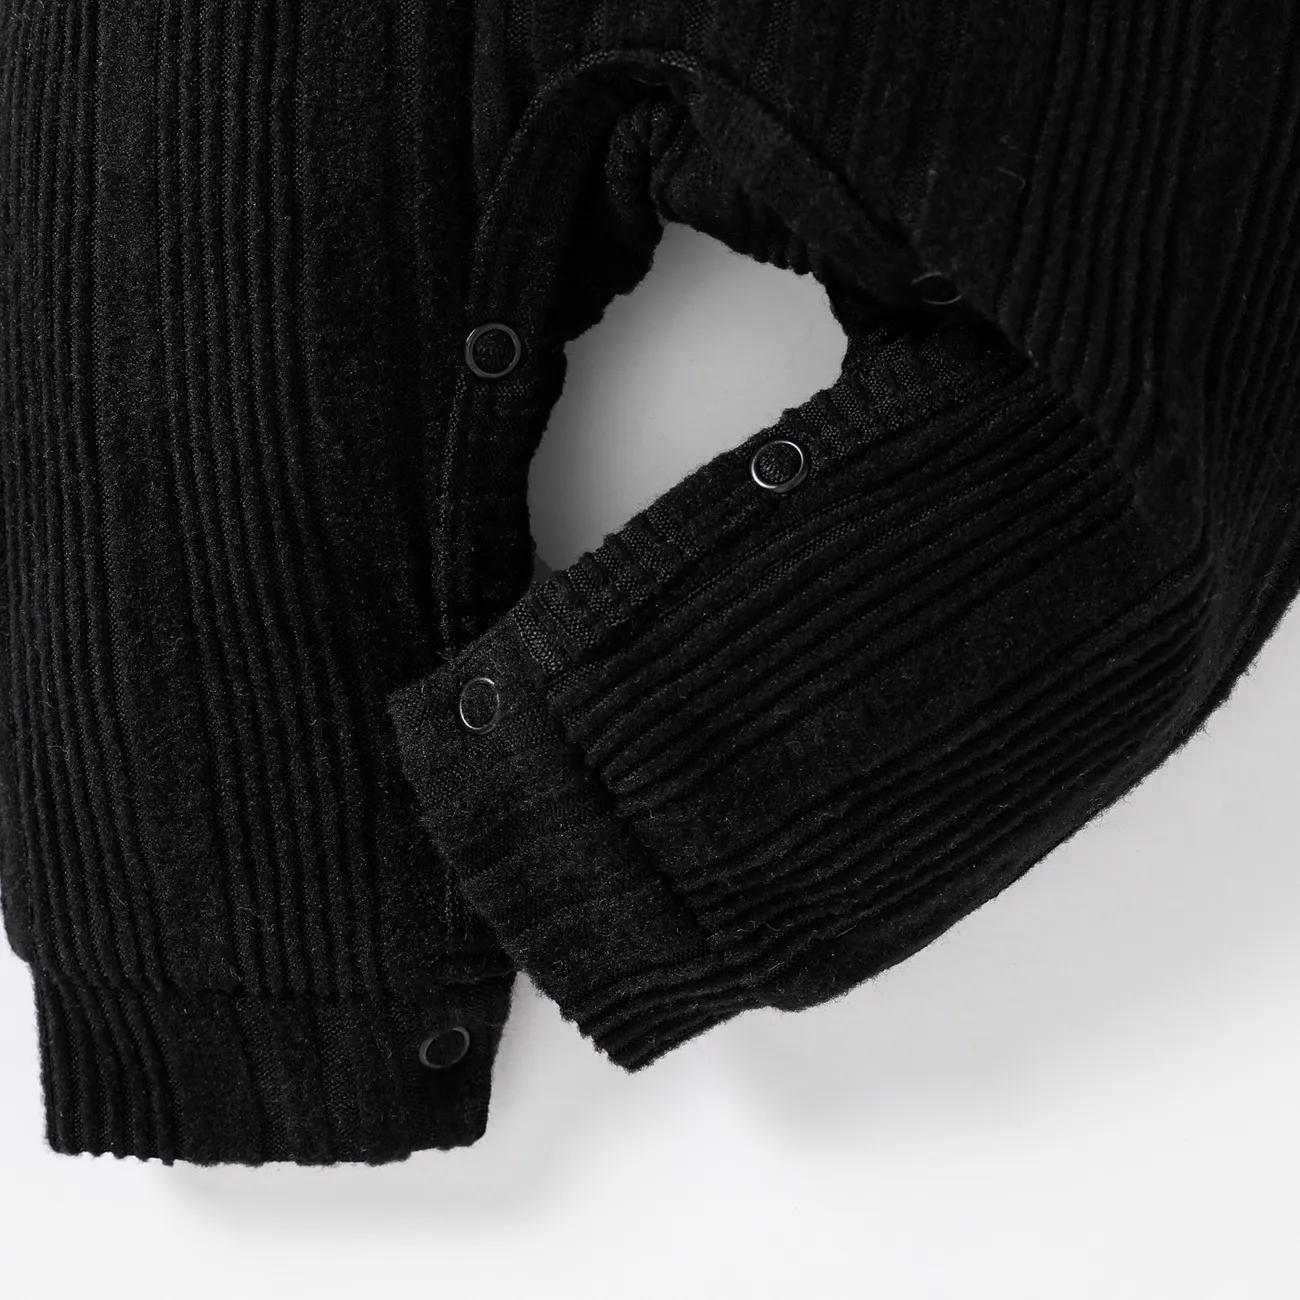 Baby Boy Basic Solid Color Long Sleeve Jumpsuit Black big image 1